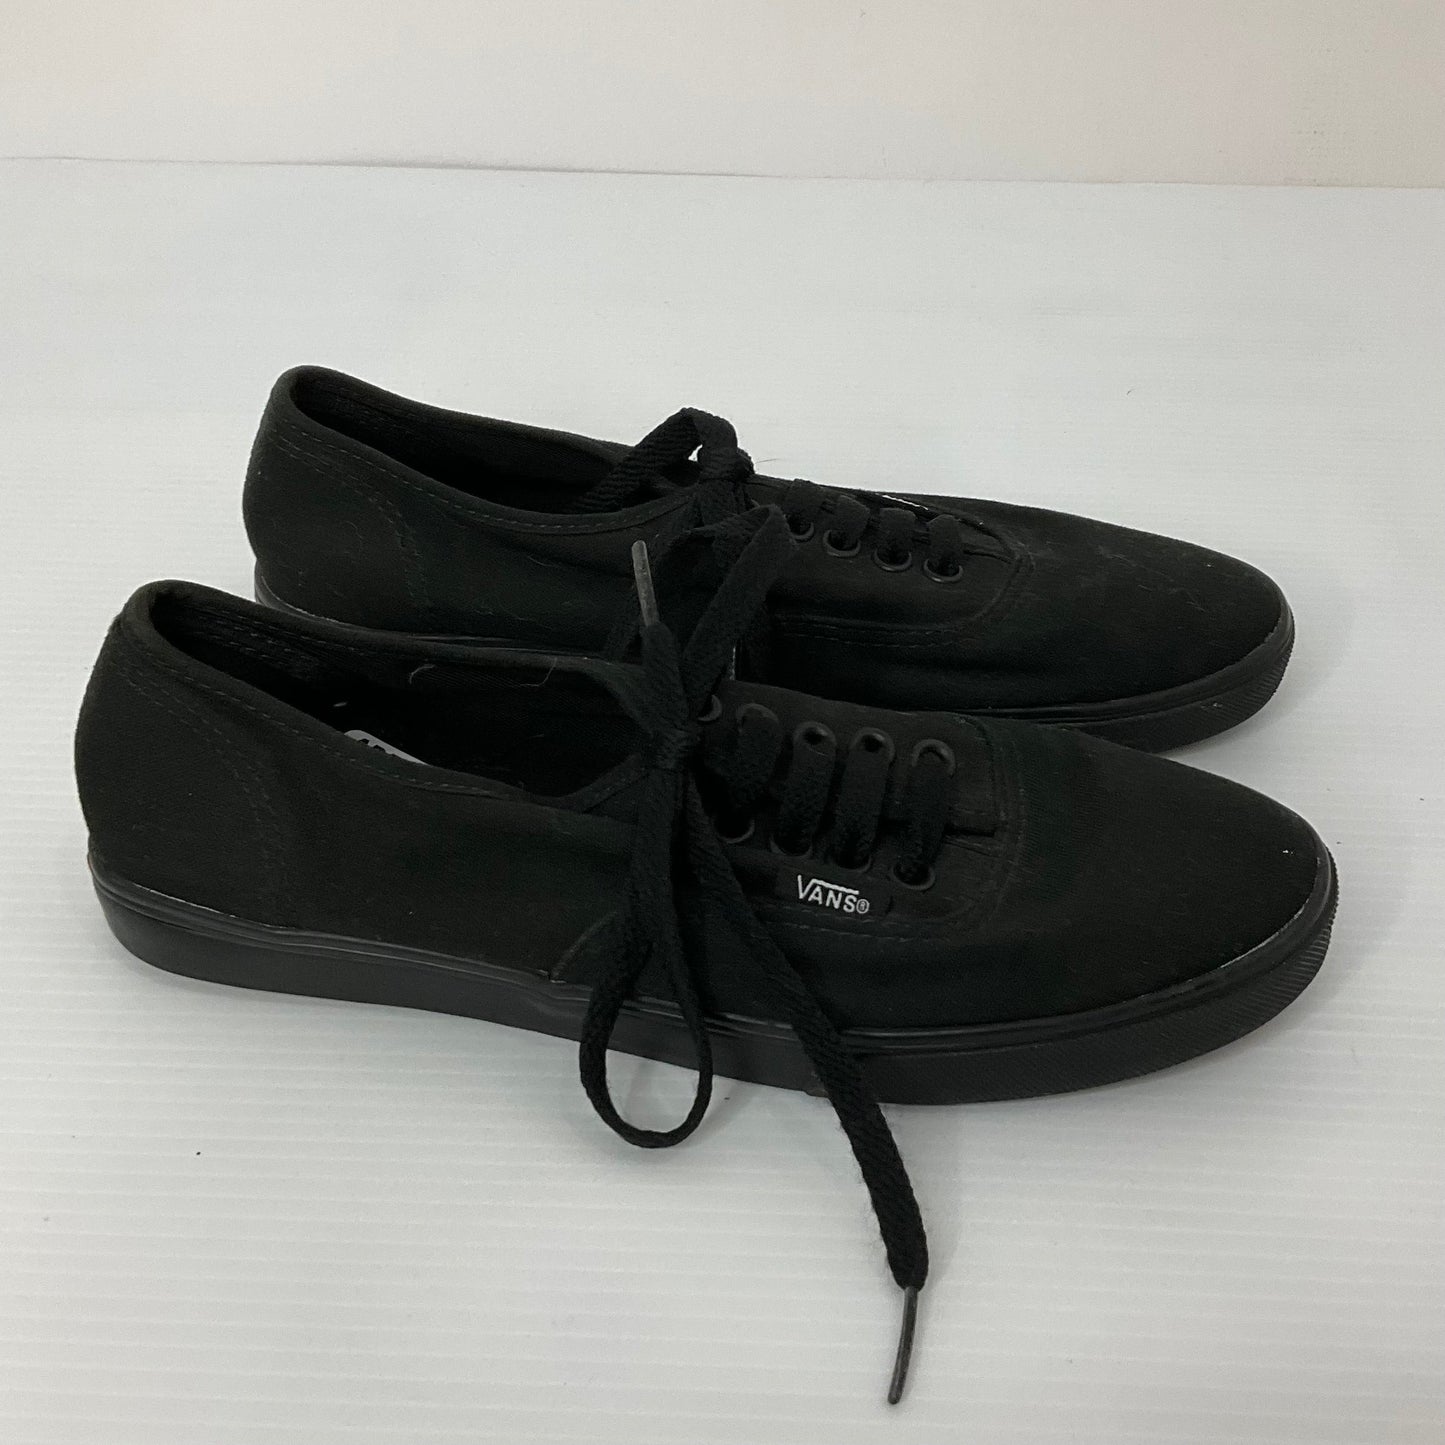 Black Shoes Sneakers Vans, Size 6.5